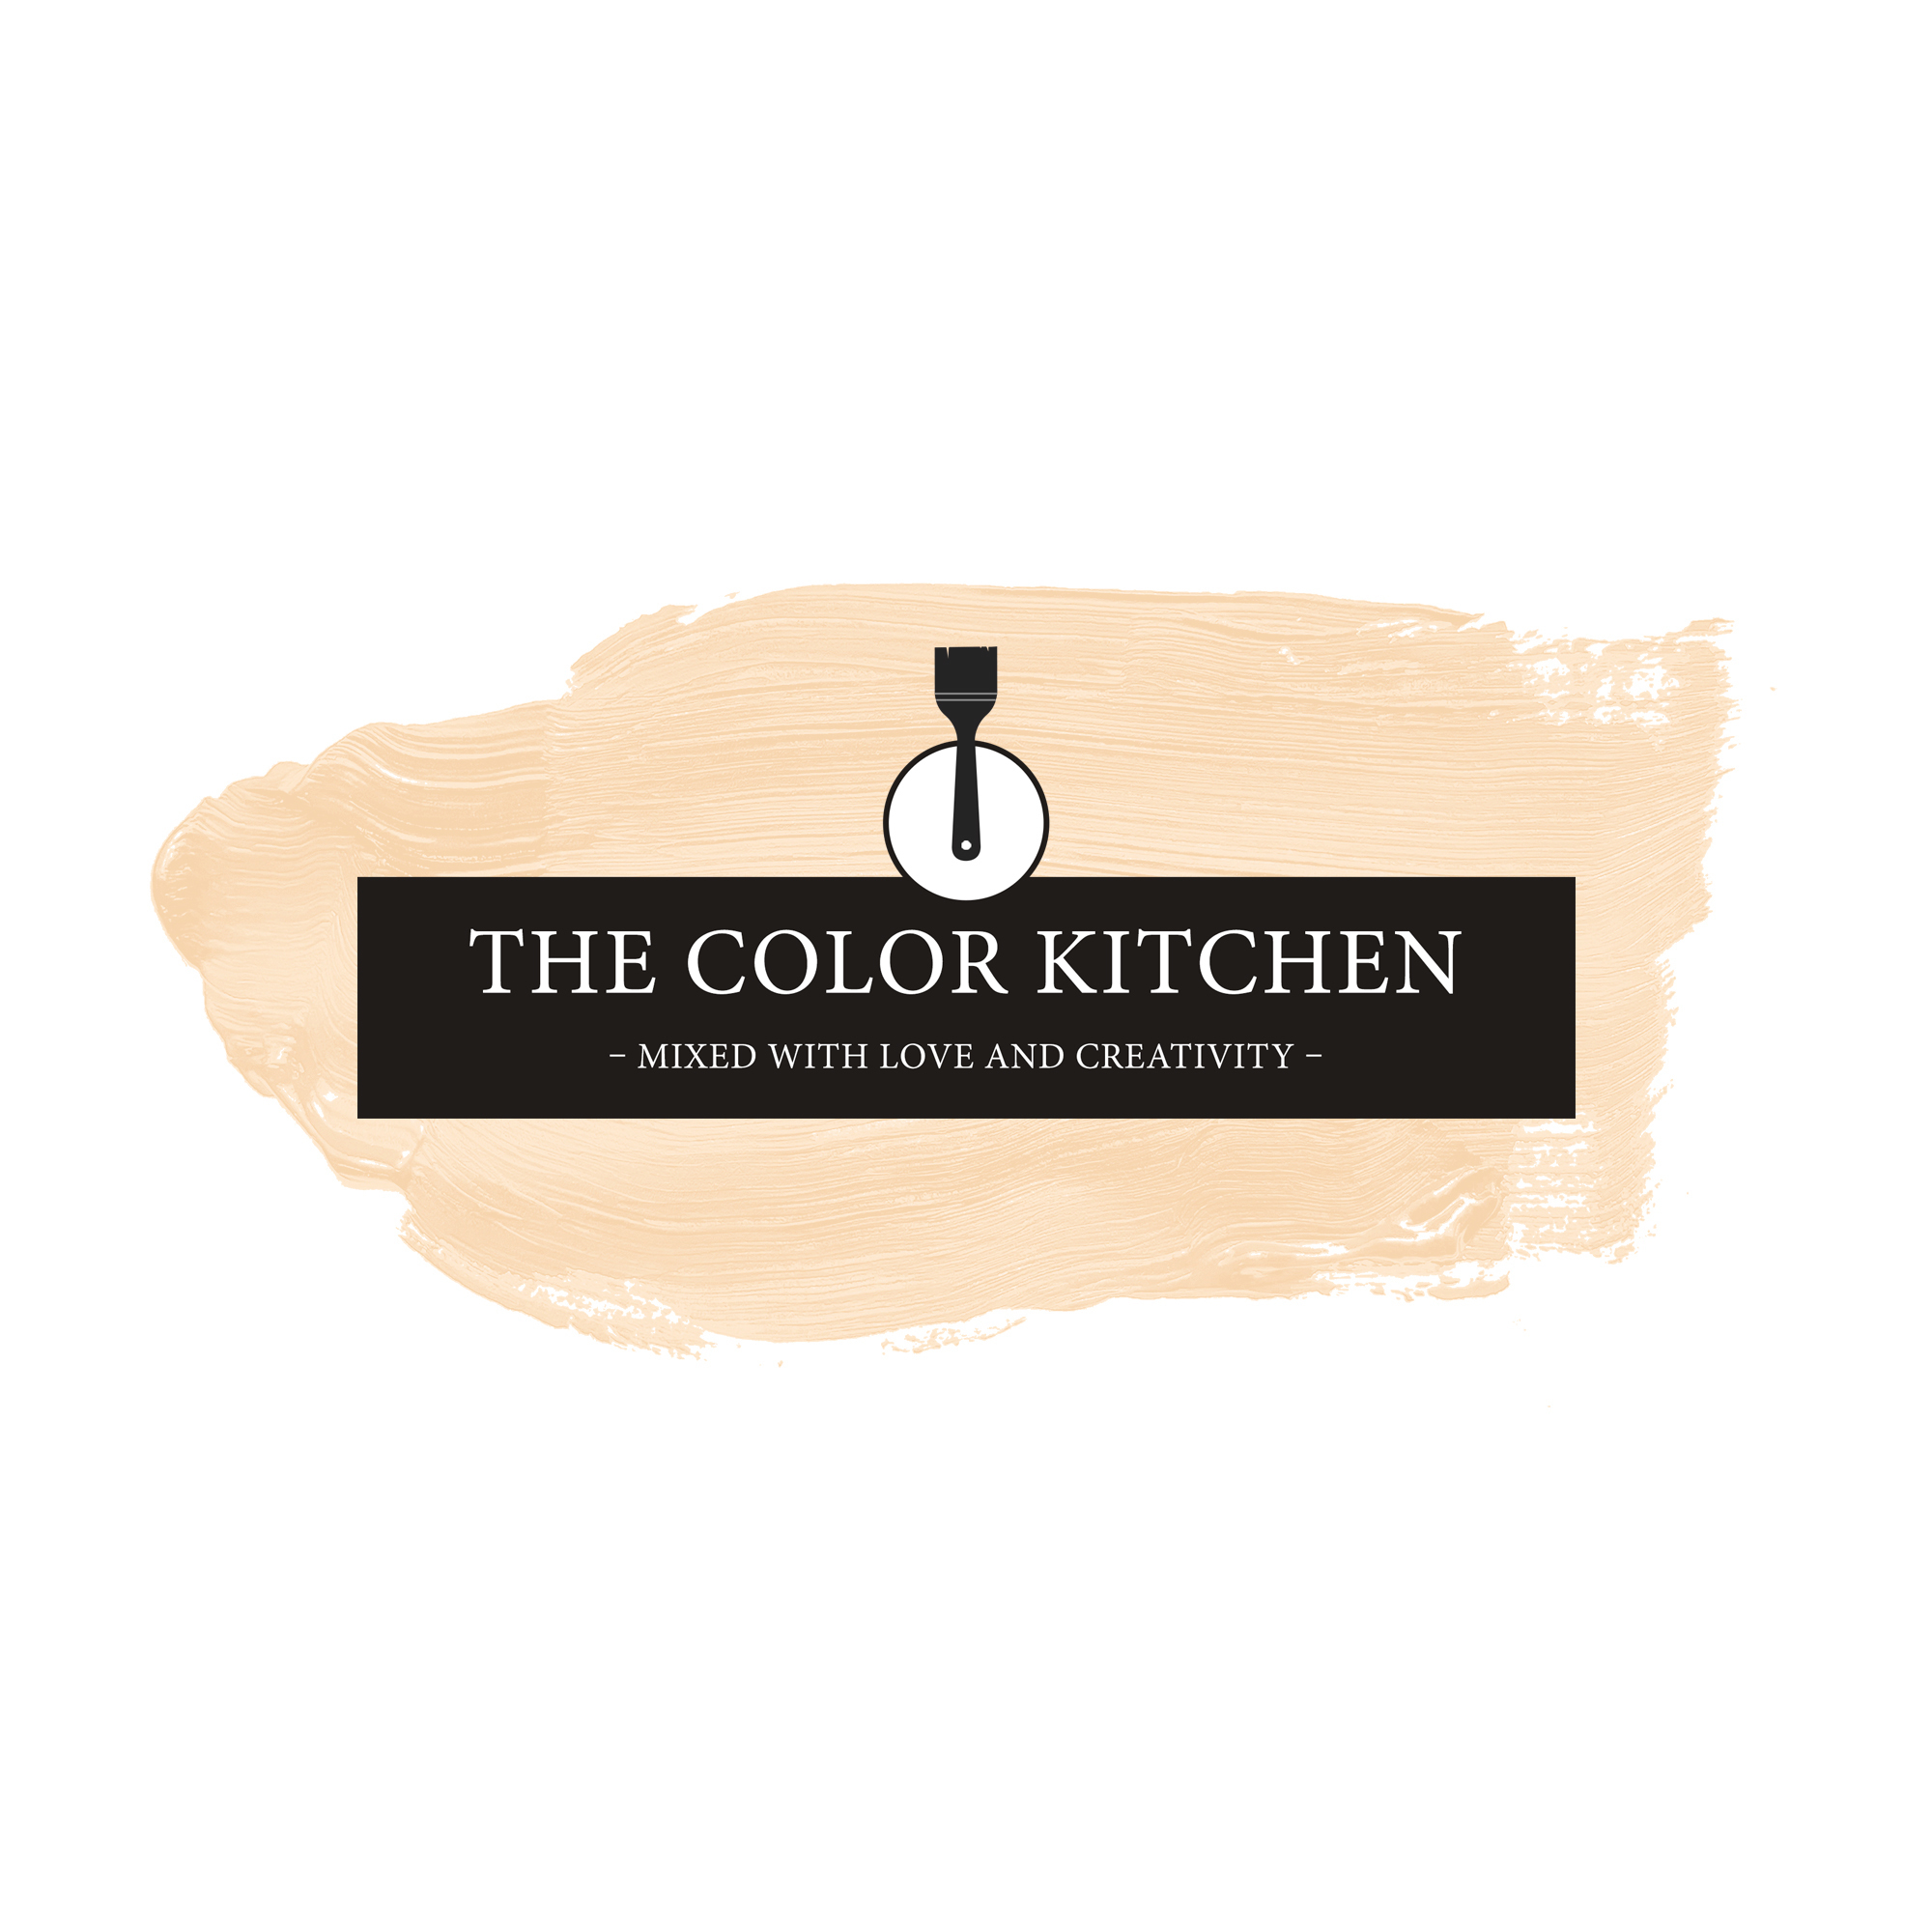 The Color Kitchen Piña Colada 2,5 l